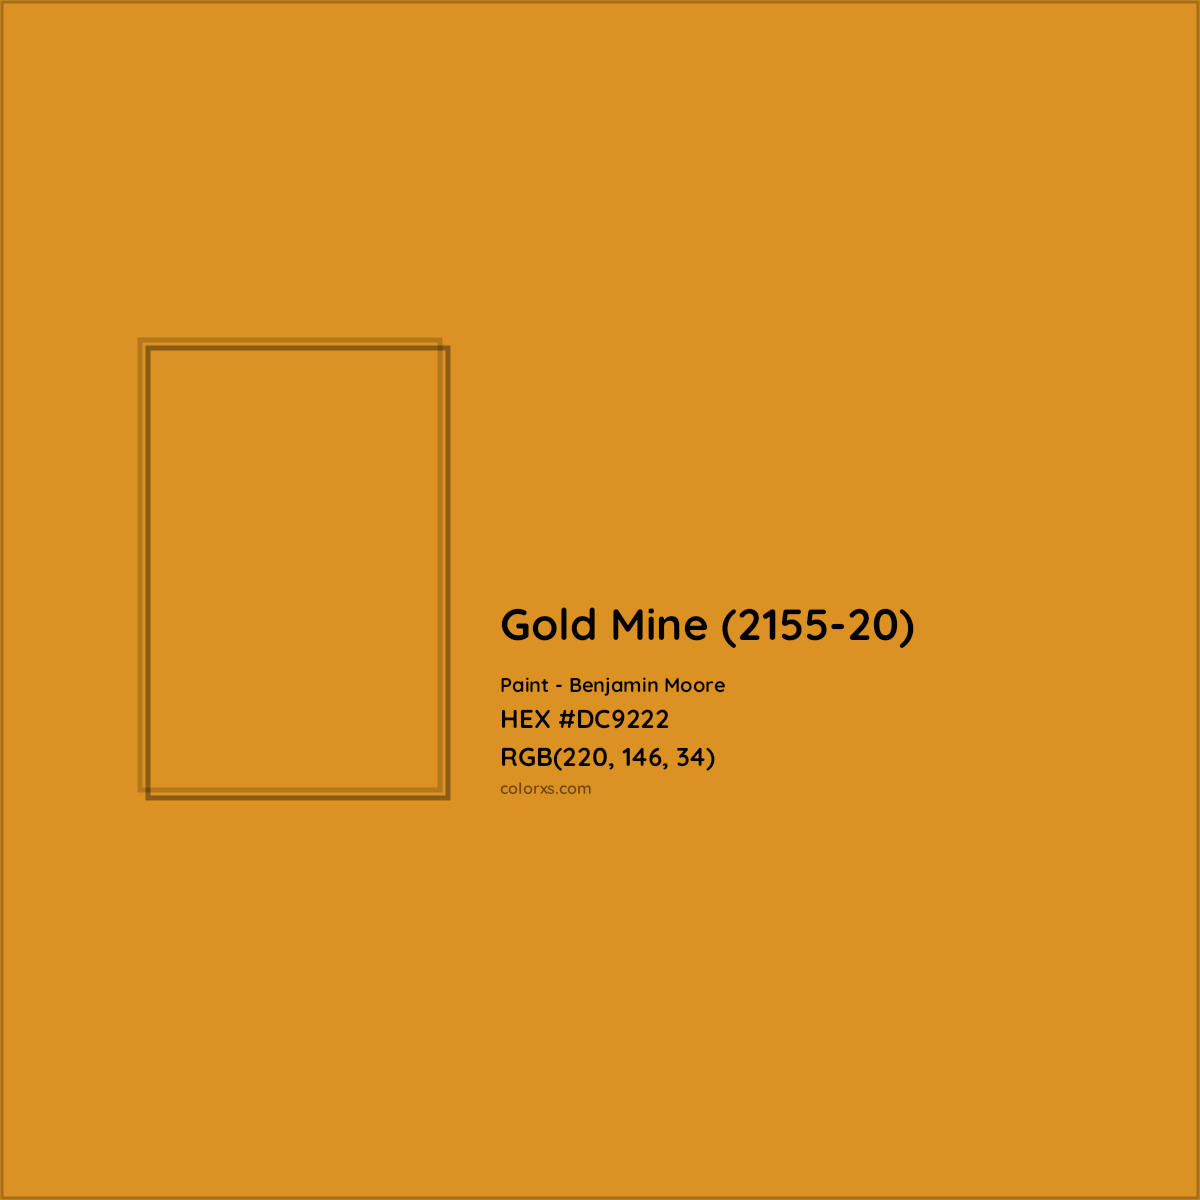 HEX #DC9222 Gold Mine (2155-20) Paint Benjamin Moore - Color Code